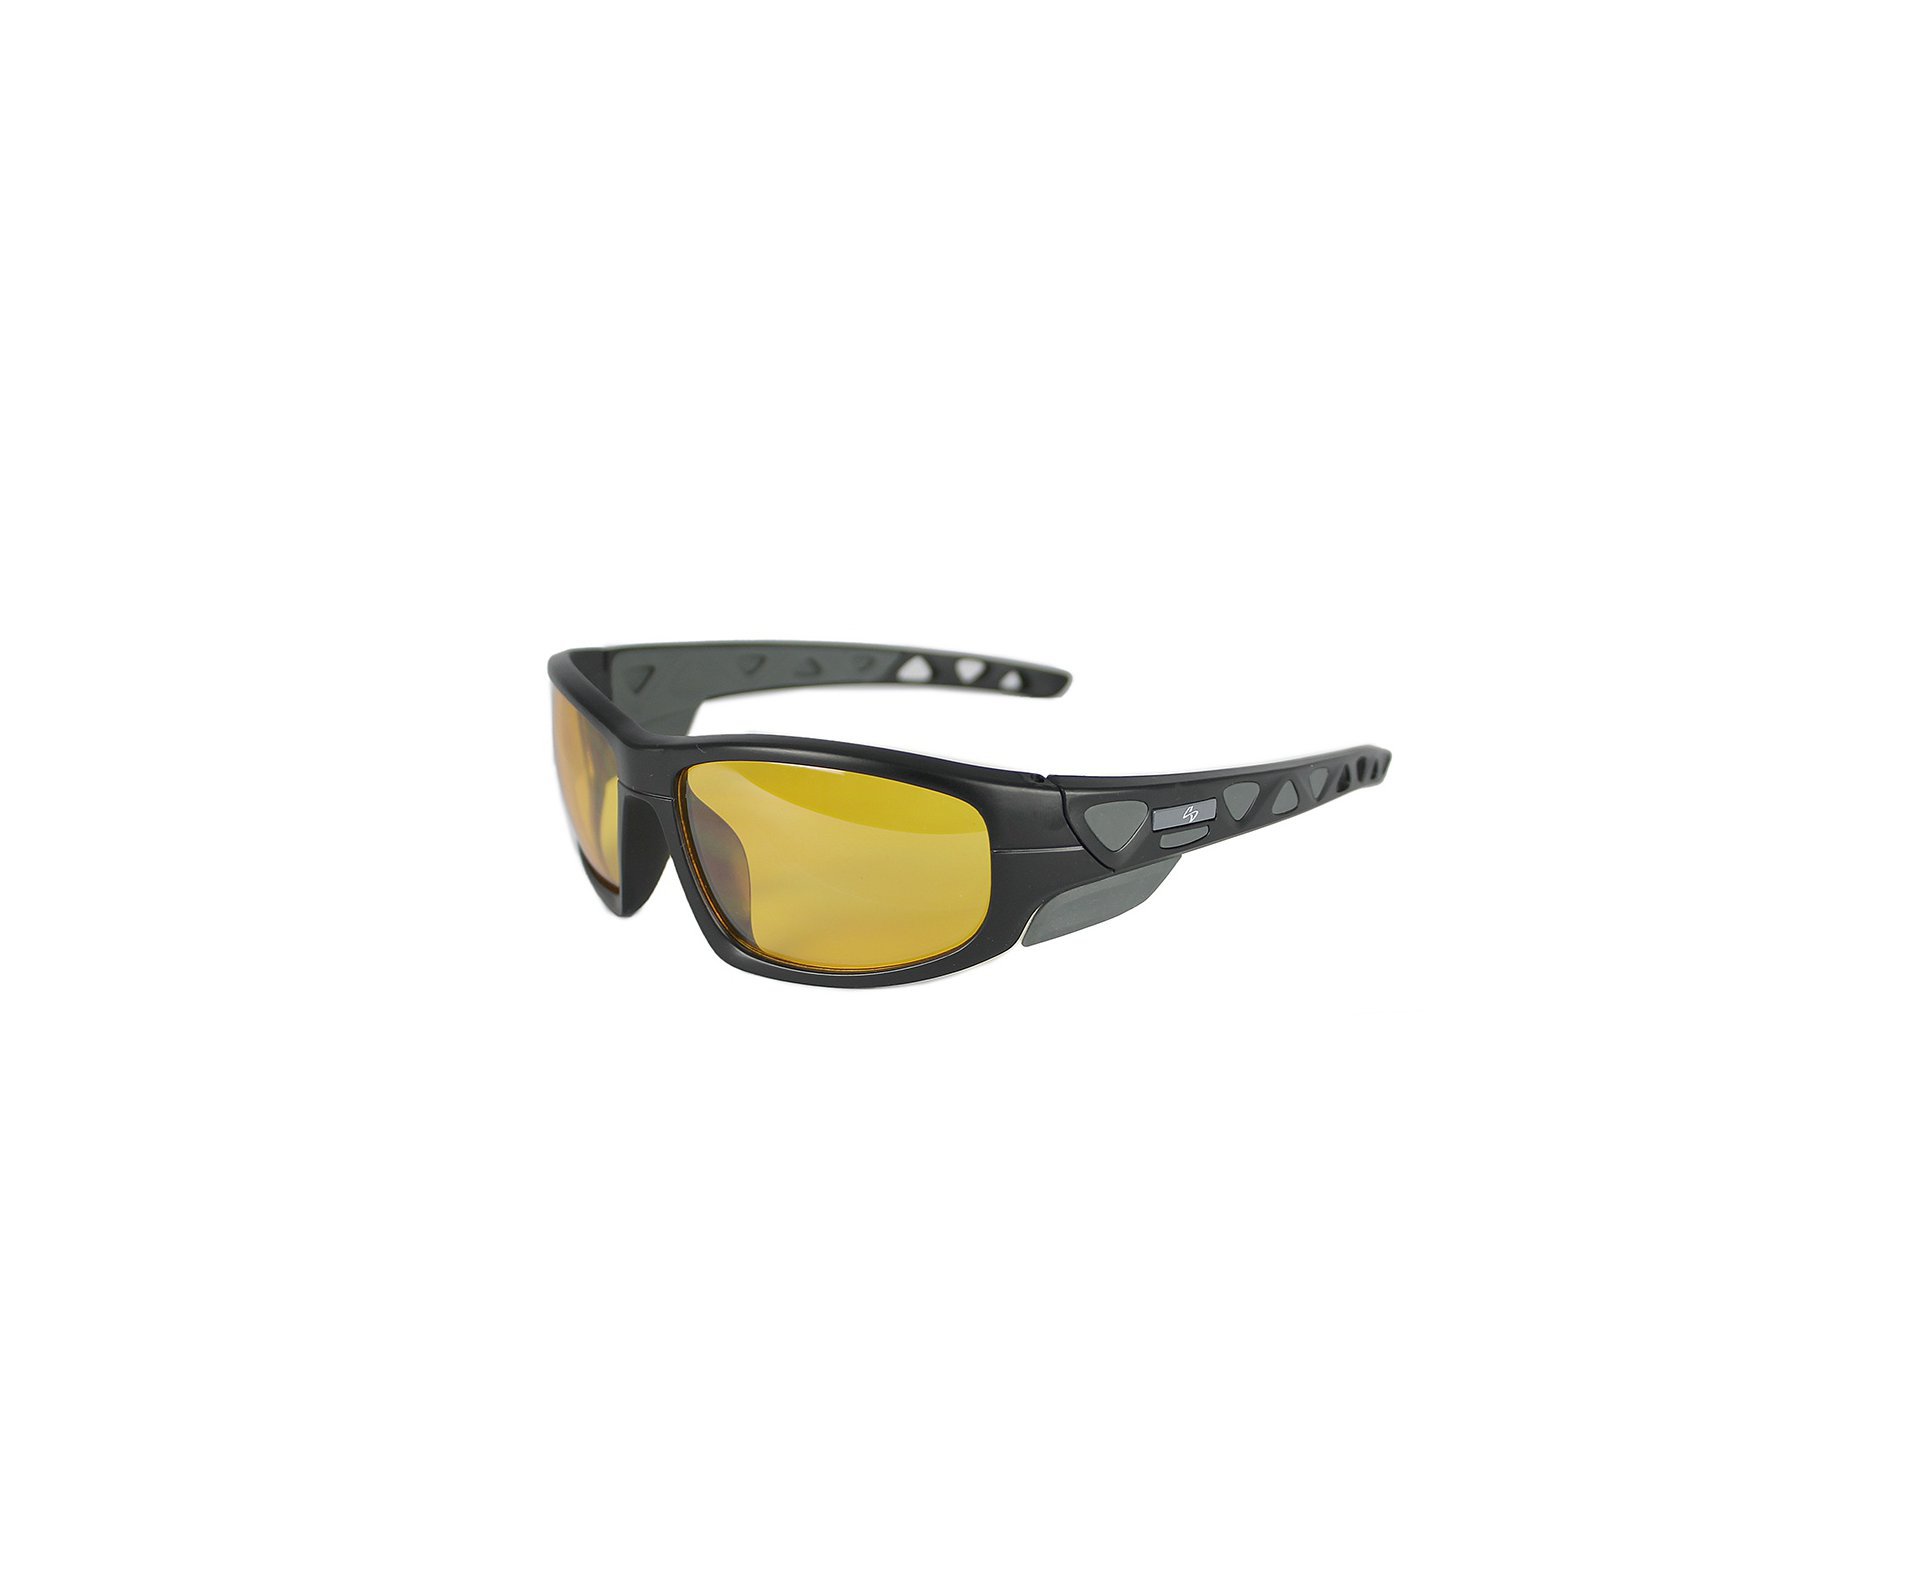 Óculos Insano Shades 2 com Armação Preto Fosco - Lente Amarela